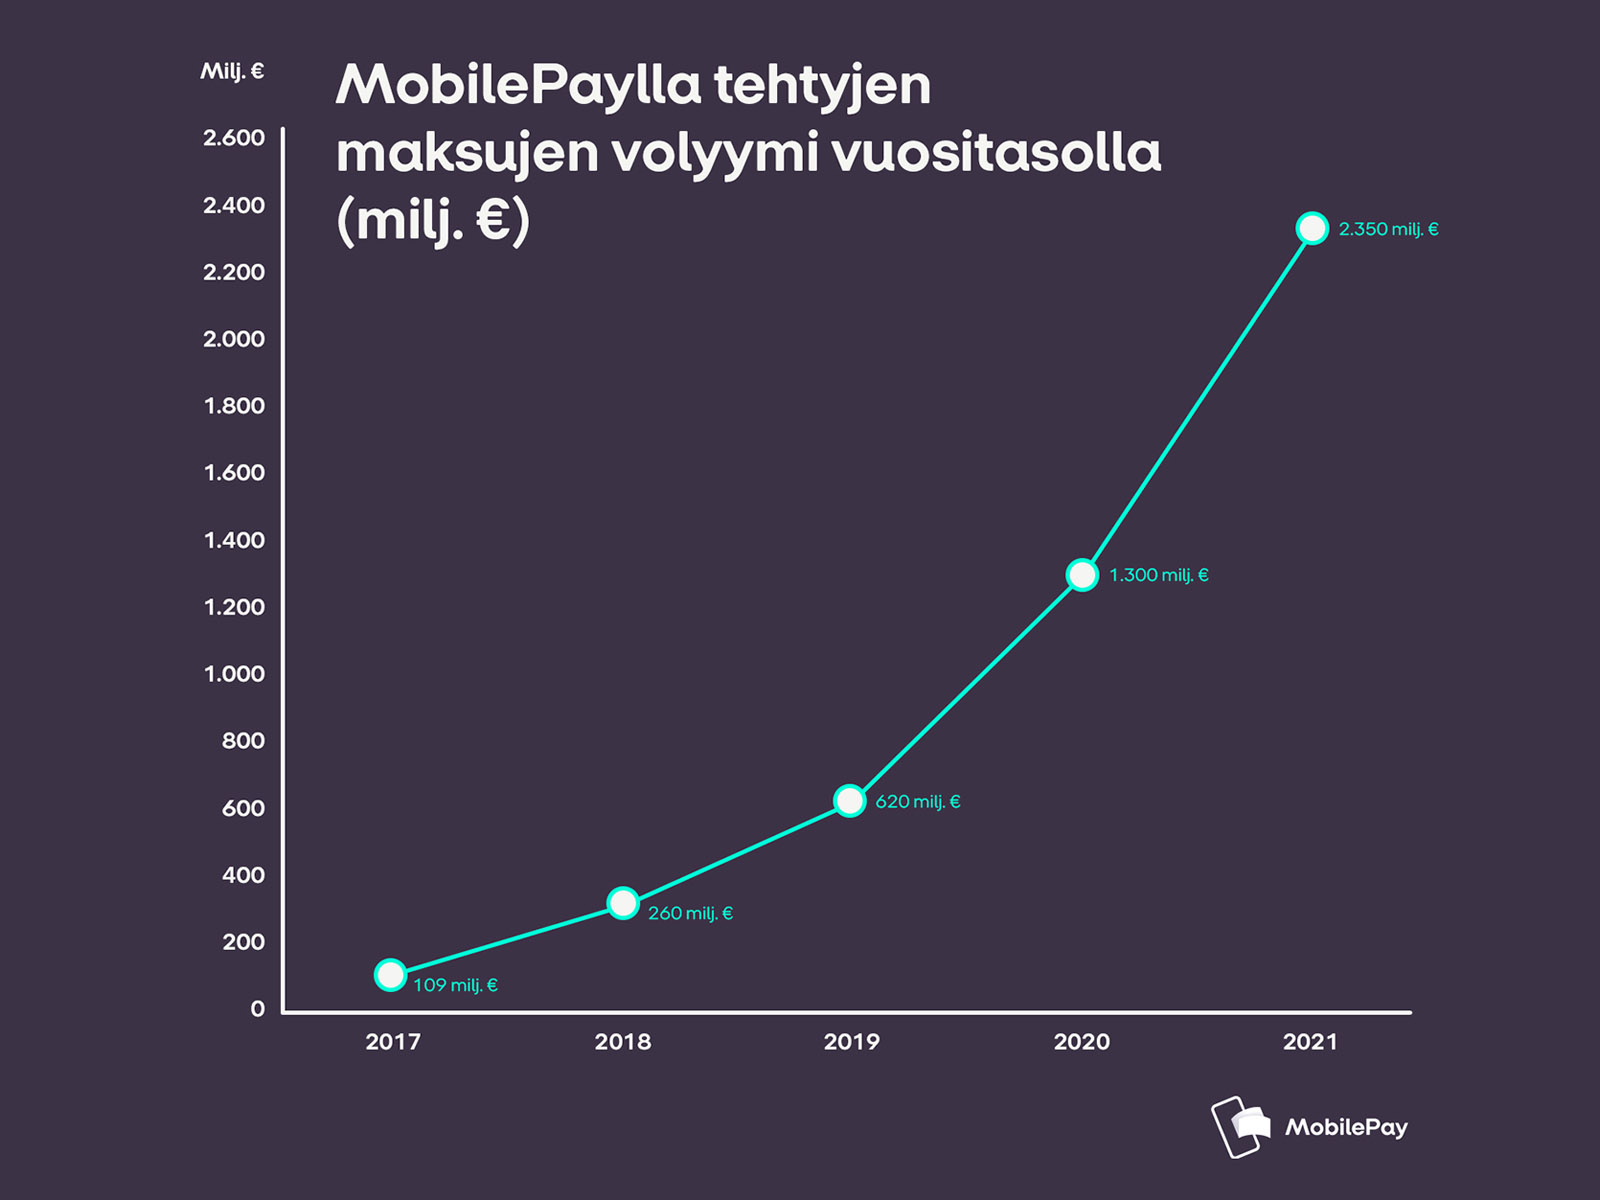 MobilePaylla tehtyjen maksujen volyymi vuositasolla - graafi